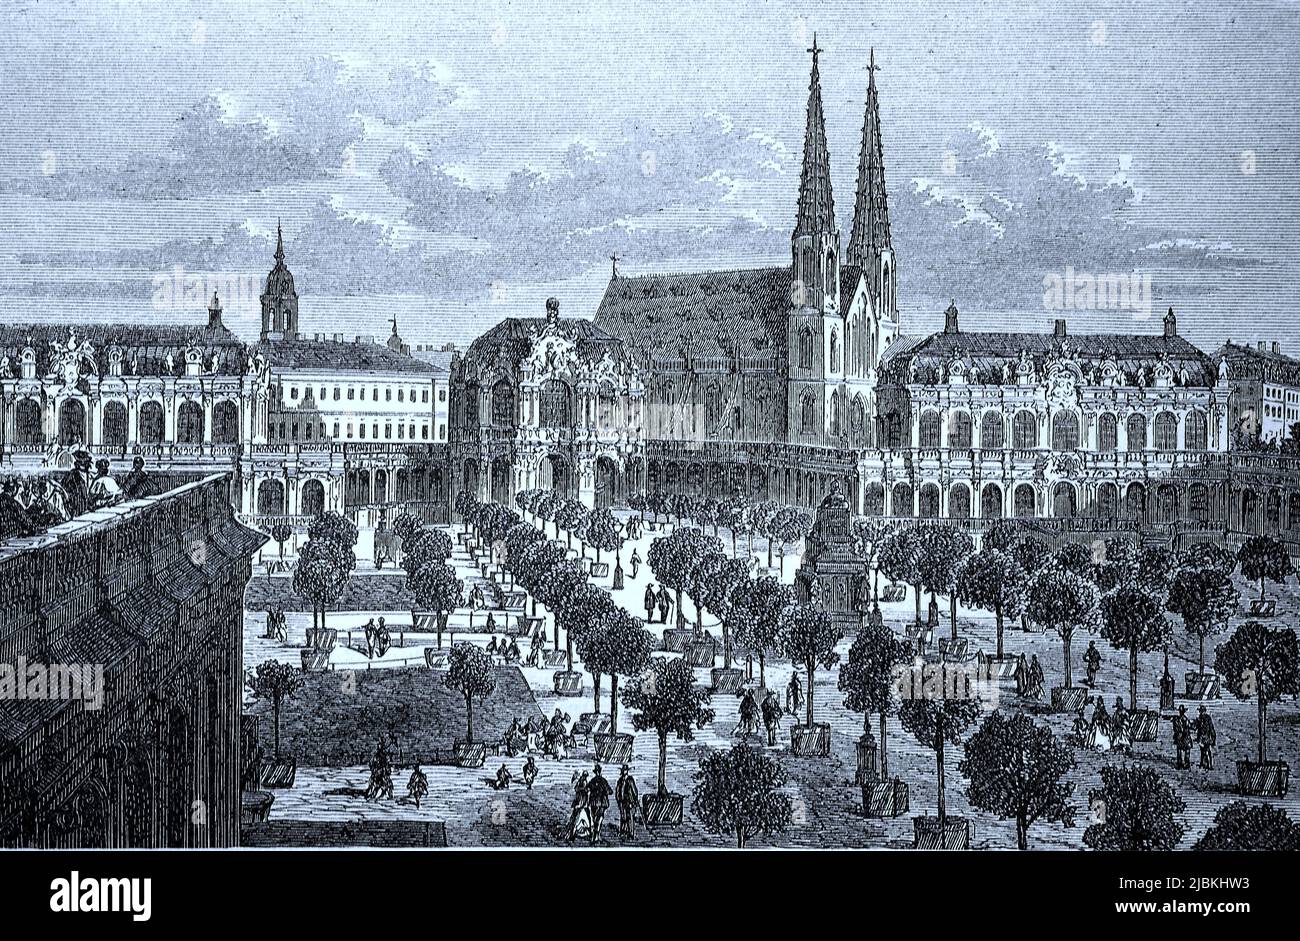 Der Zwinger und die Sophienkirche in Dresden, um 1870, Sachsen, Deutschland, digital restaurierte Reproduktion einer Originalvorlage aus dem 19. Jahrhundert, genaues Originaldatum nicht bekannt Stock Photo